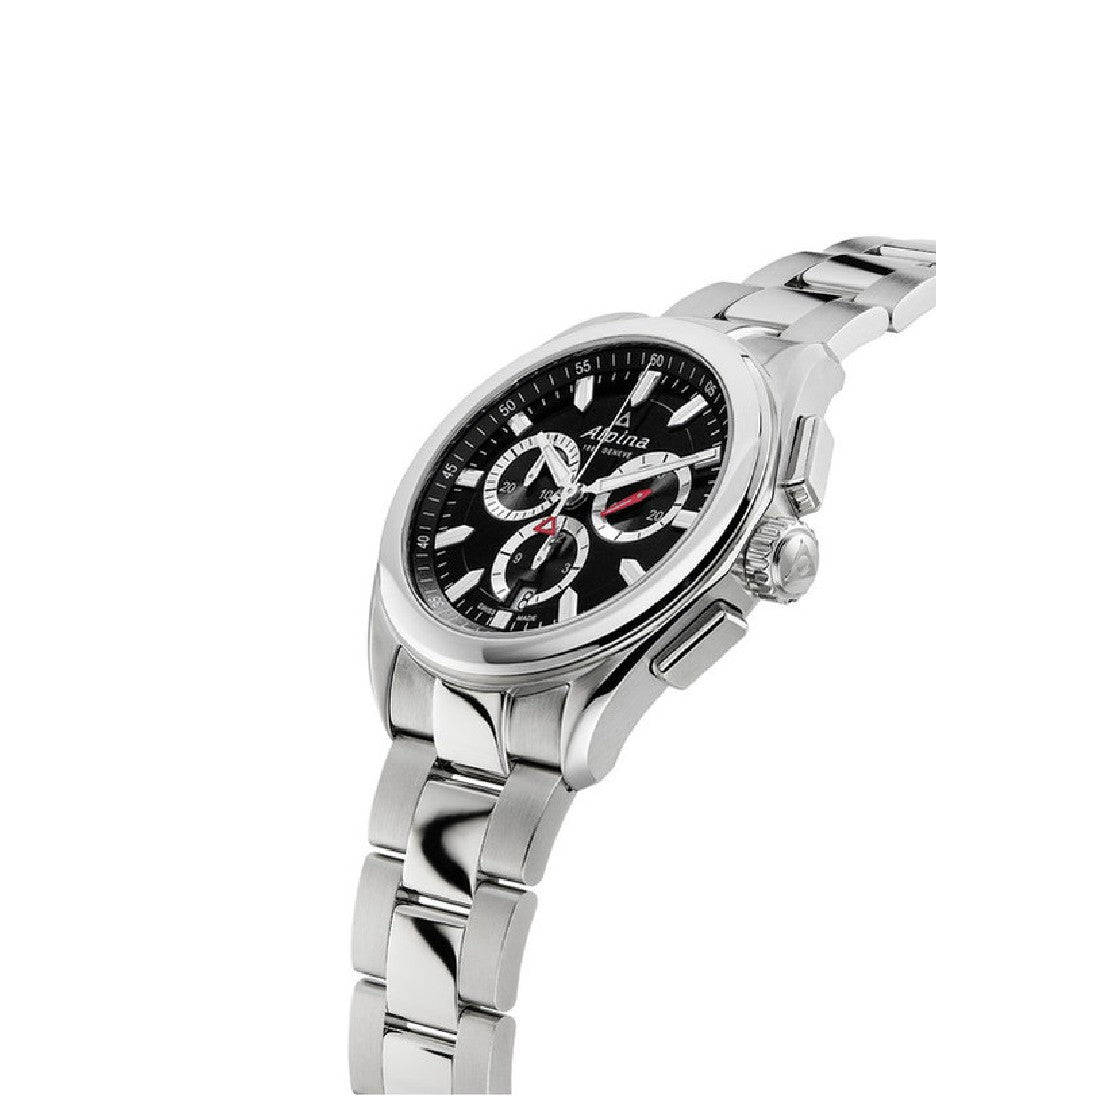 Alpina Men's Black Dial Quartz Watch - ALP-0093